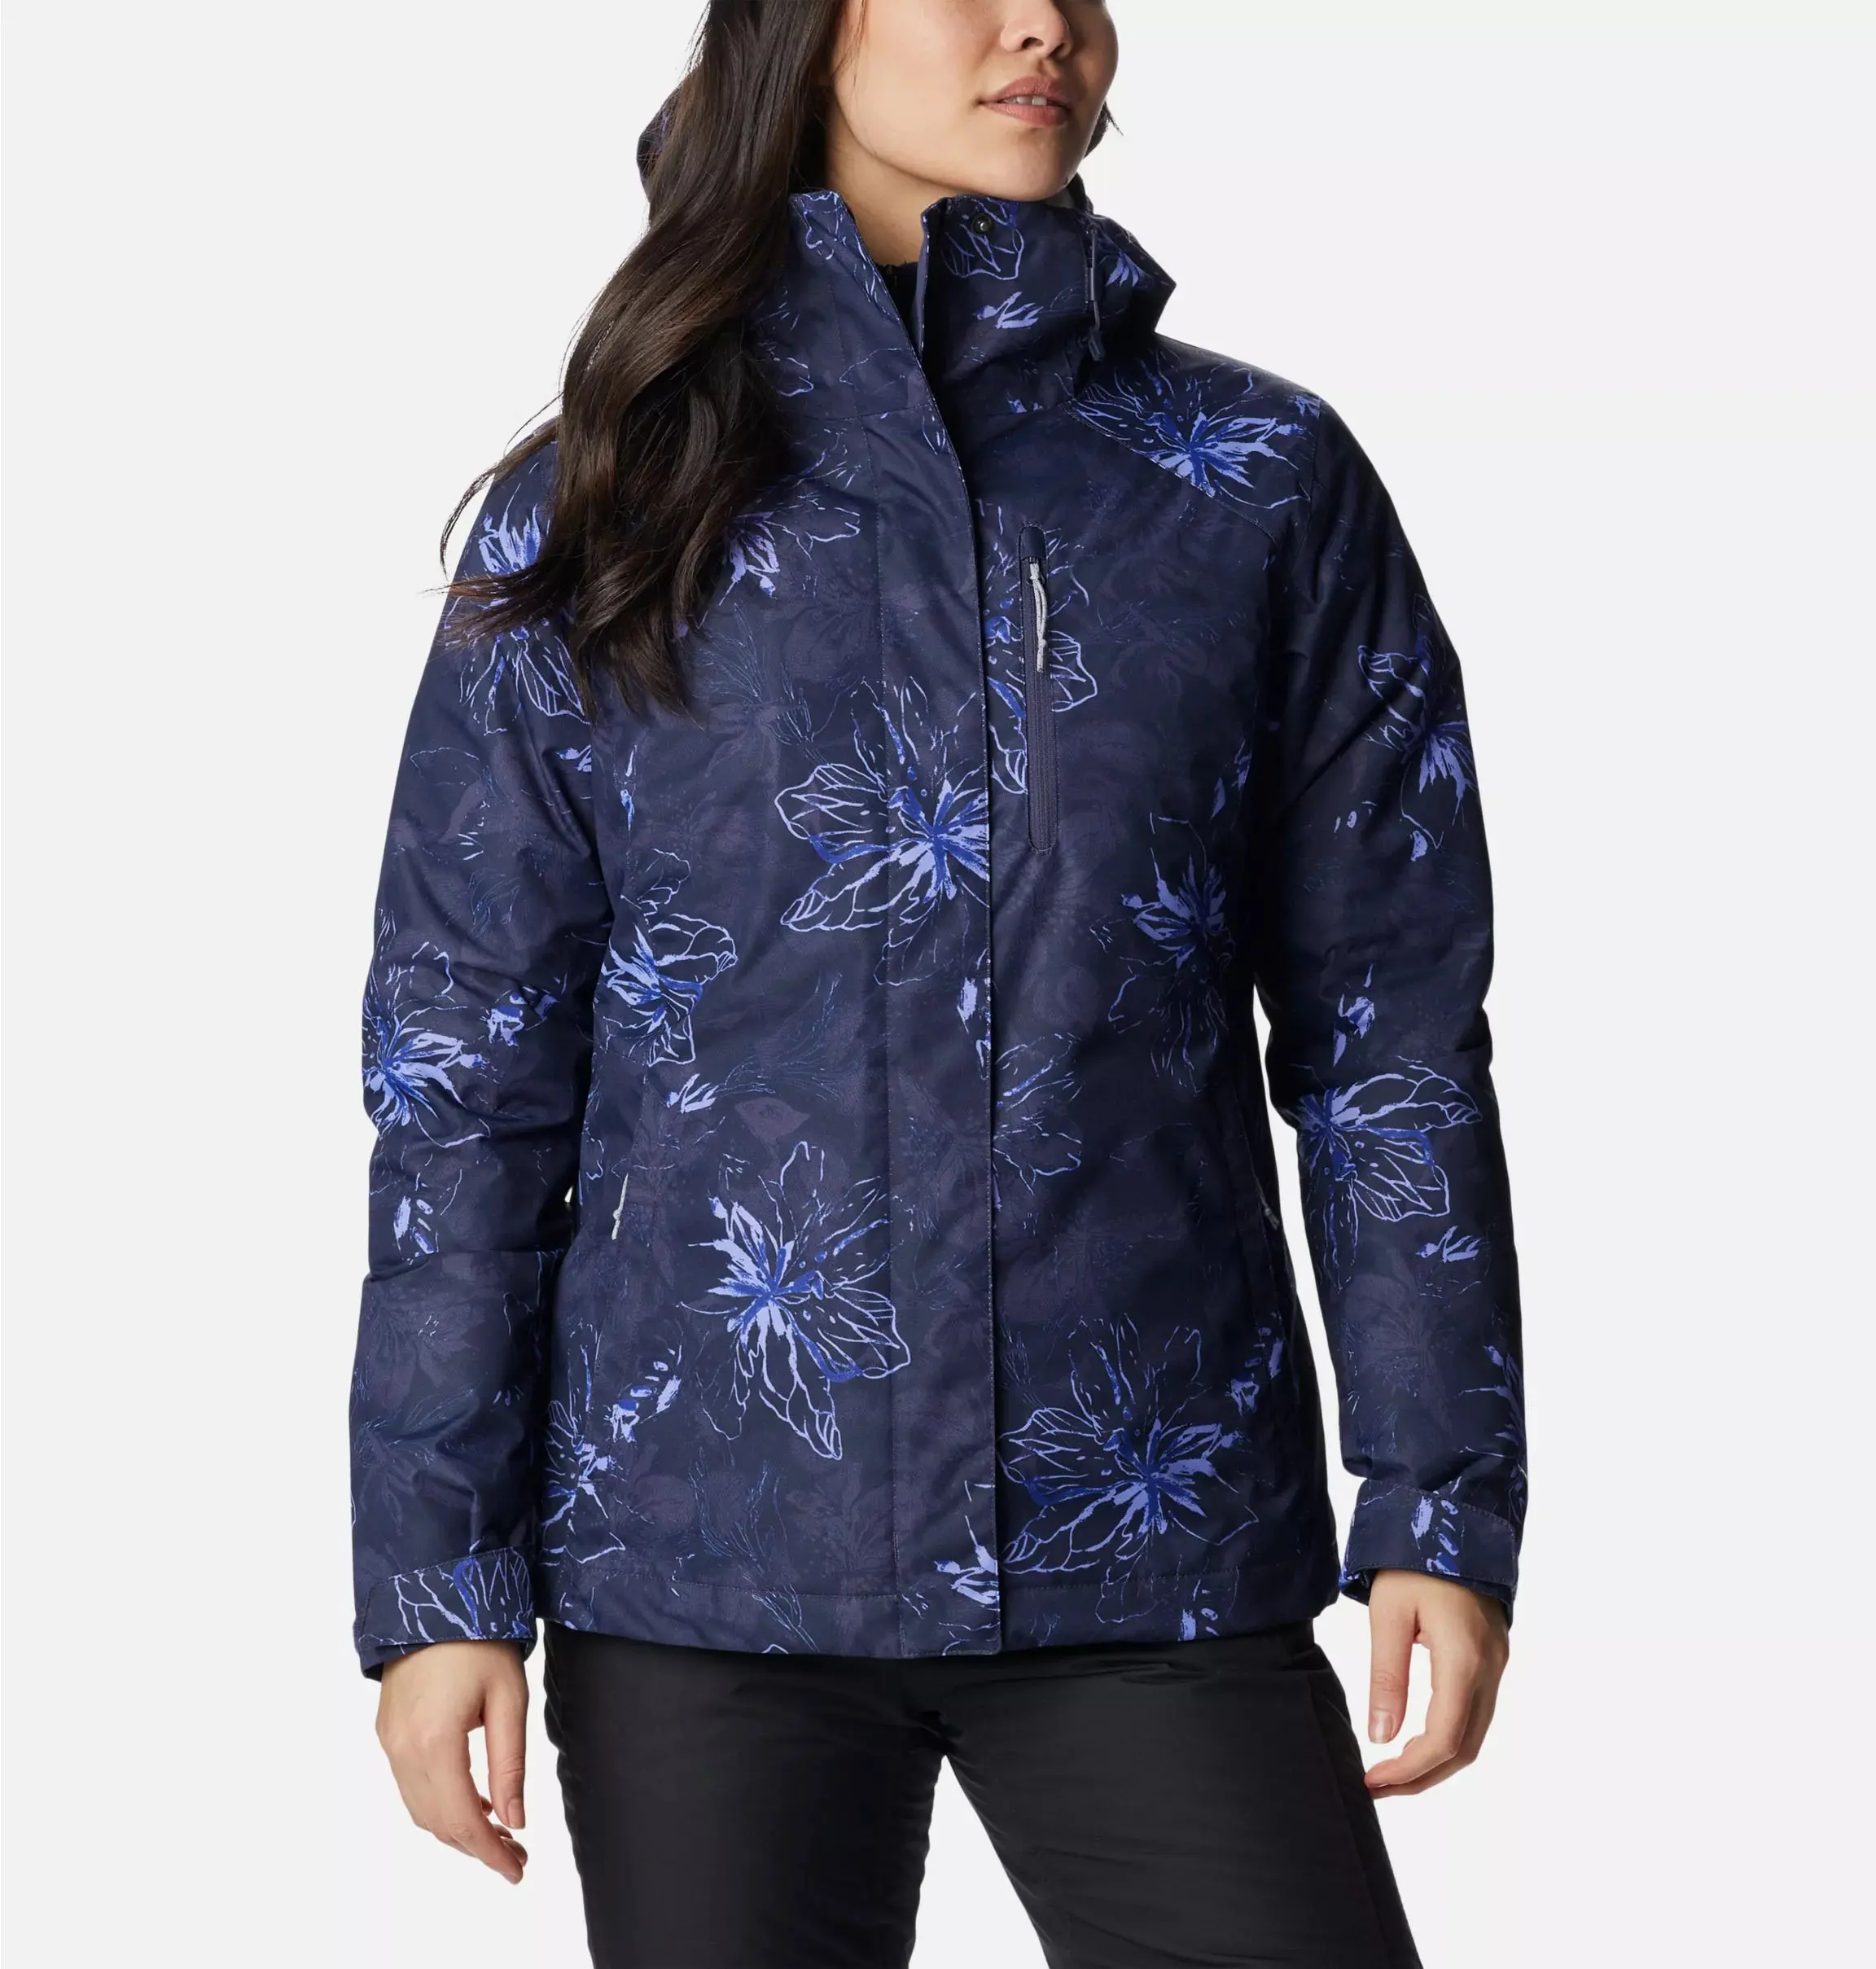 Mujeres deporte al aire libre esquí montaña escalada impermeable chaqueta de esquí ropa deportiva de talla grande nieve cortavientos chaqueta de impresión